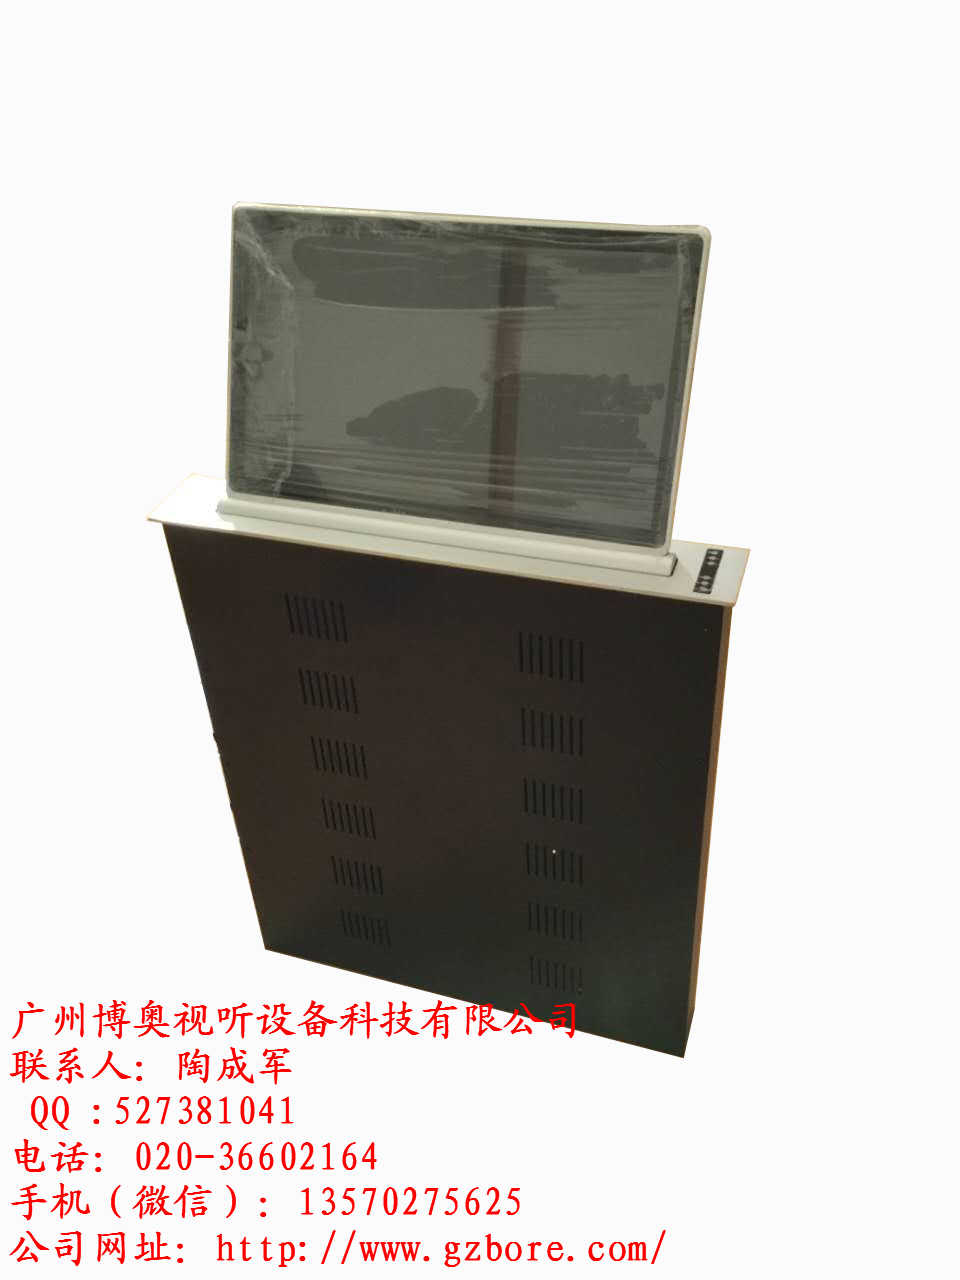 博奥液晶屏升降器|广州博奥超薄液晶屏升降器厂家电动液晶屏升降机厂家图片